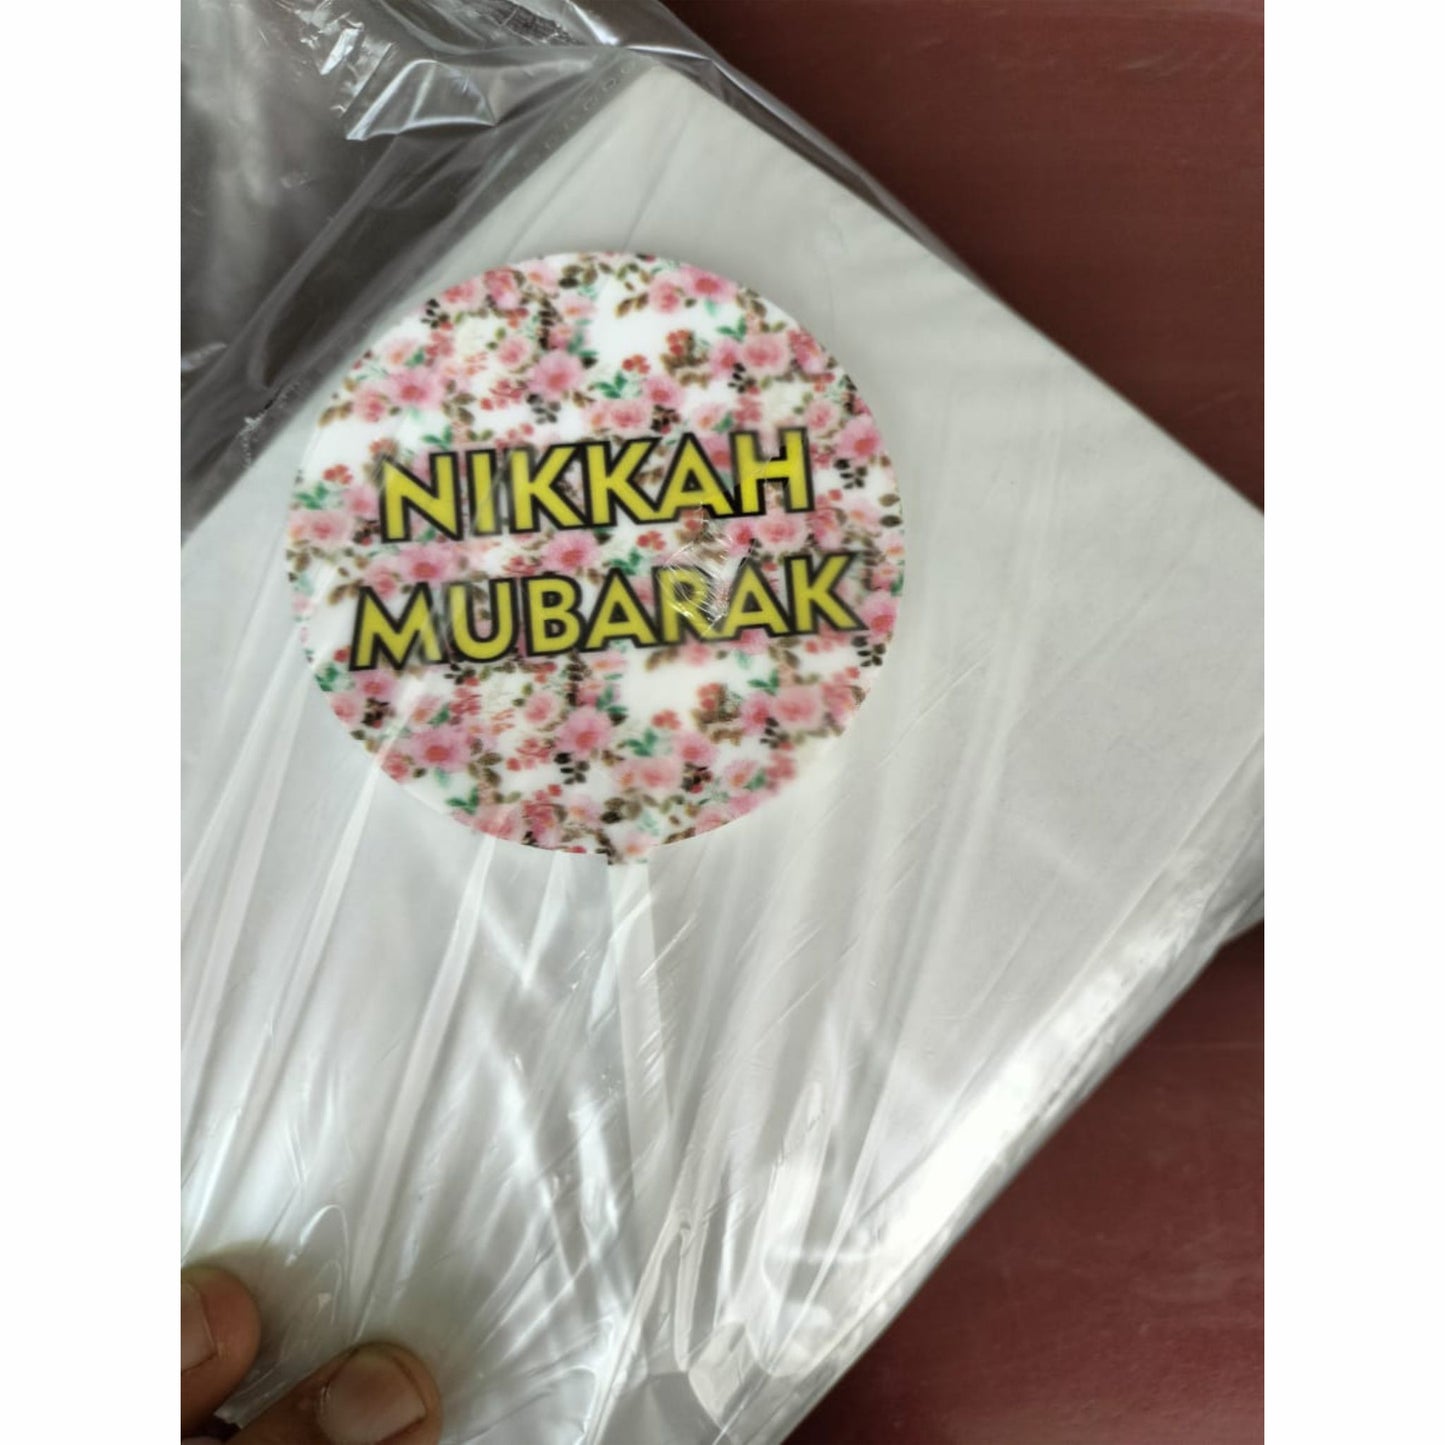 Nikkah Mubarak Printed Cake Topper